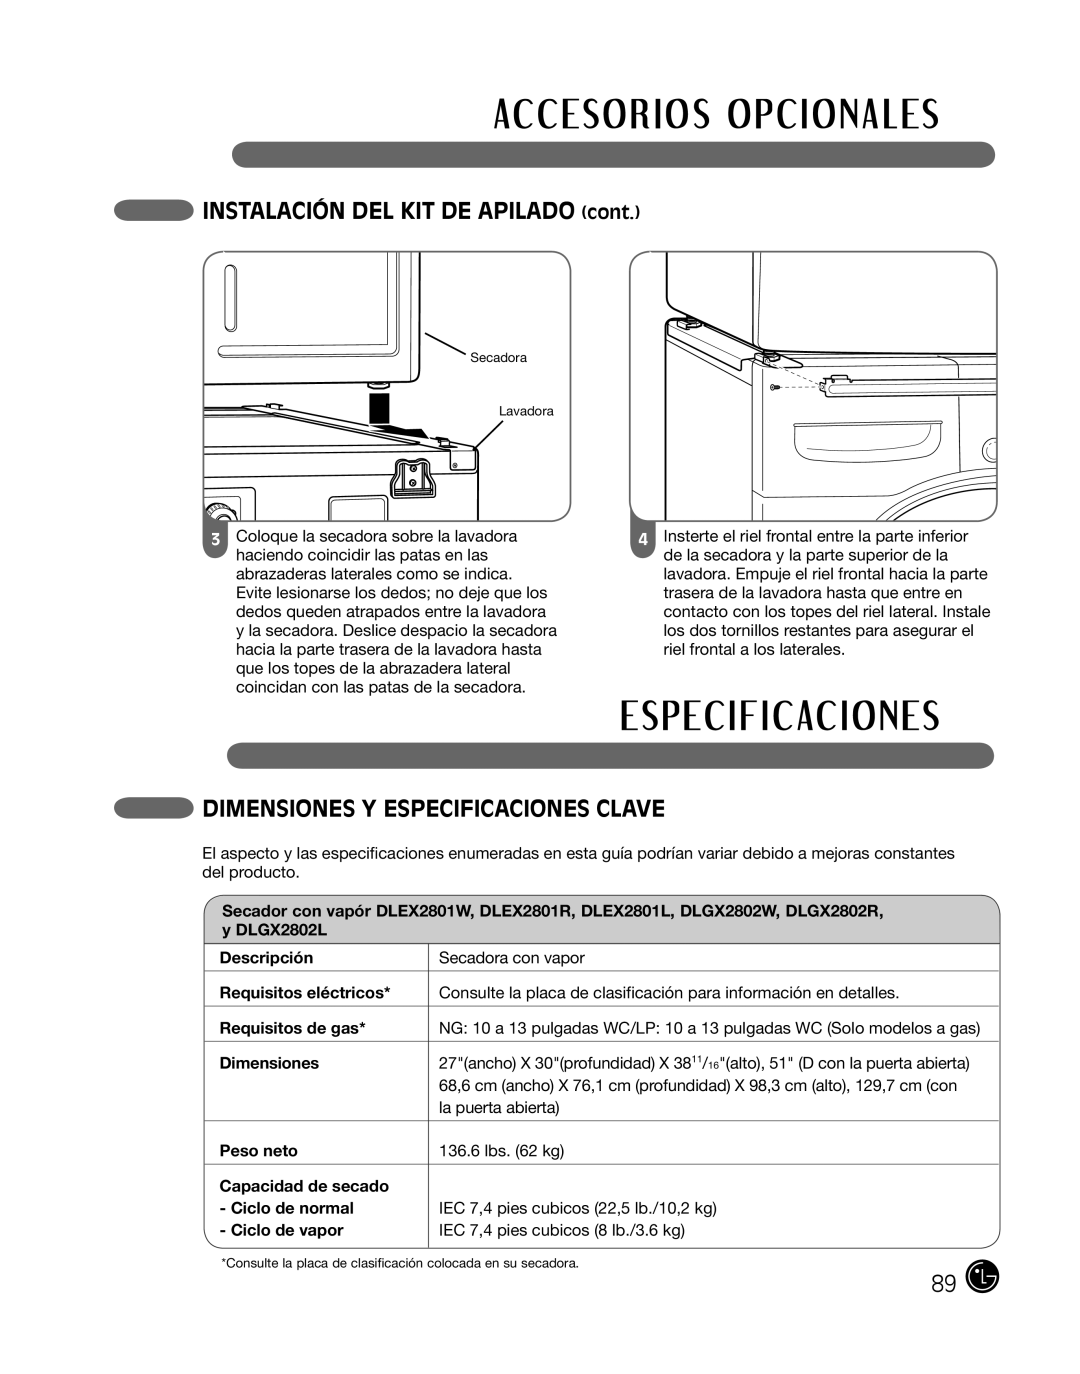 LG Electronics P154 INSTALACIÓN DEL KIT DE APILADO cont, Dimensiones Y Especificaciones Clave, Descripción, Peso neto 